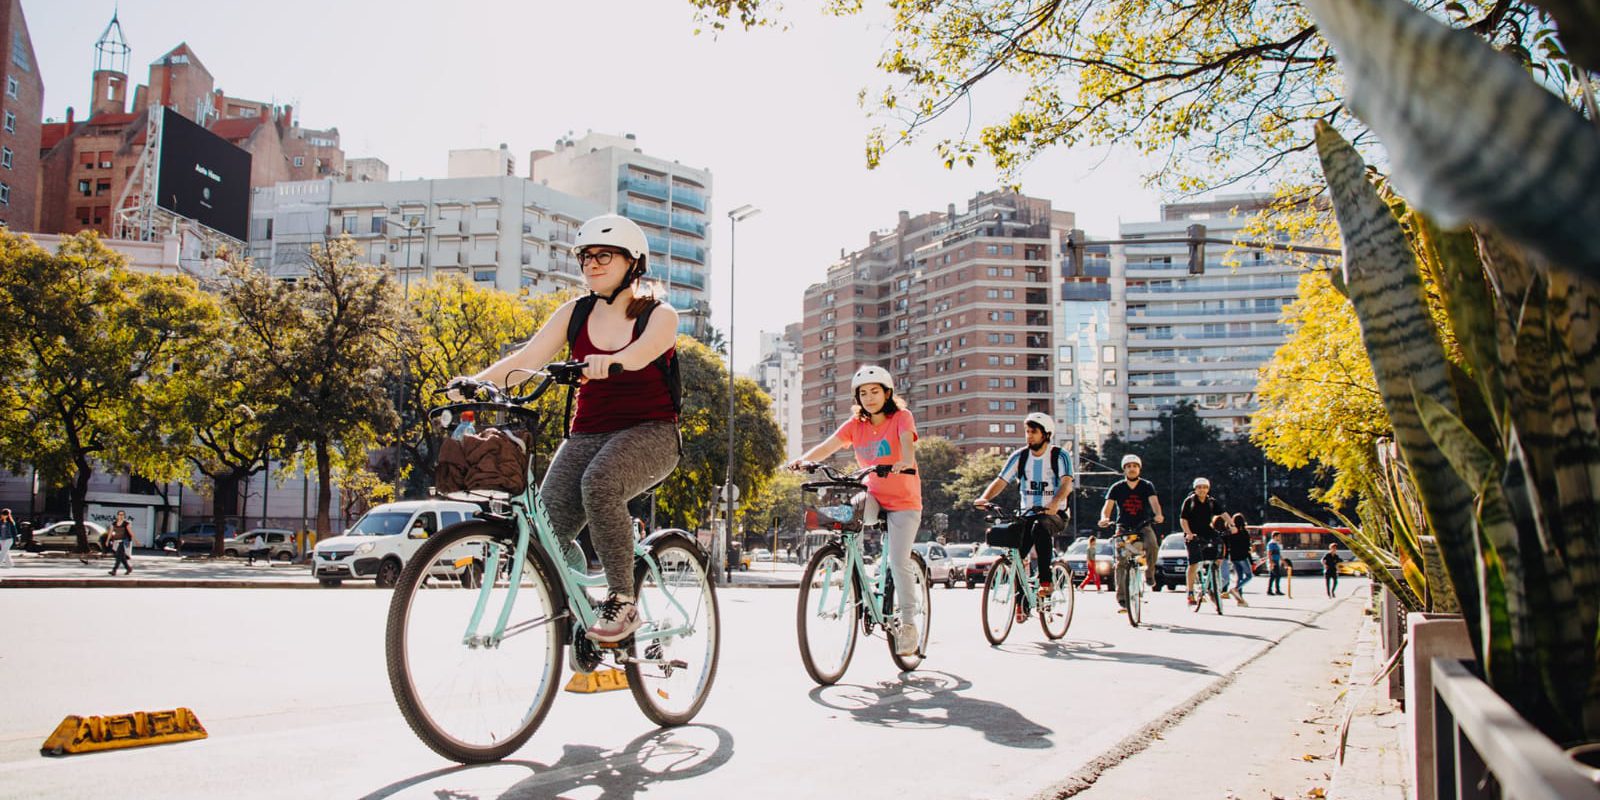 La estación de AVE de Córdoba tendrá un parking de bicicletas para fomentar  la movilidad sostenible